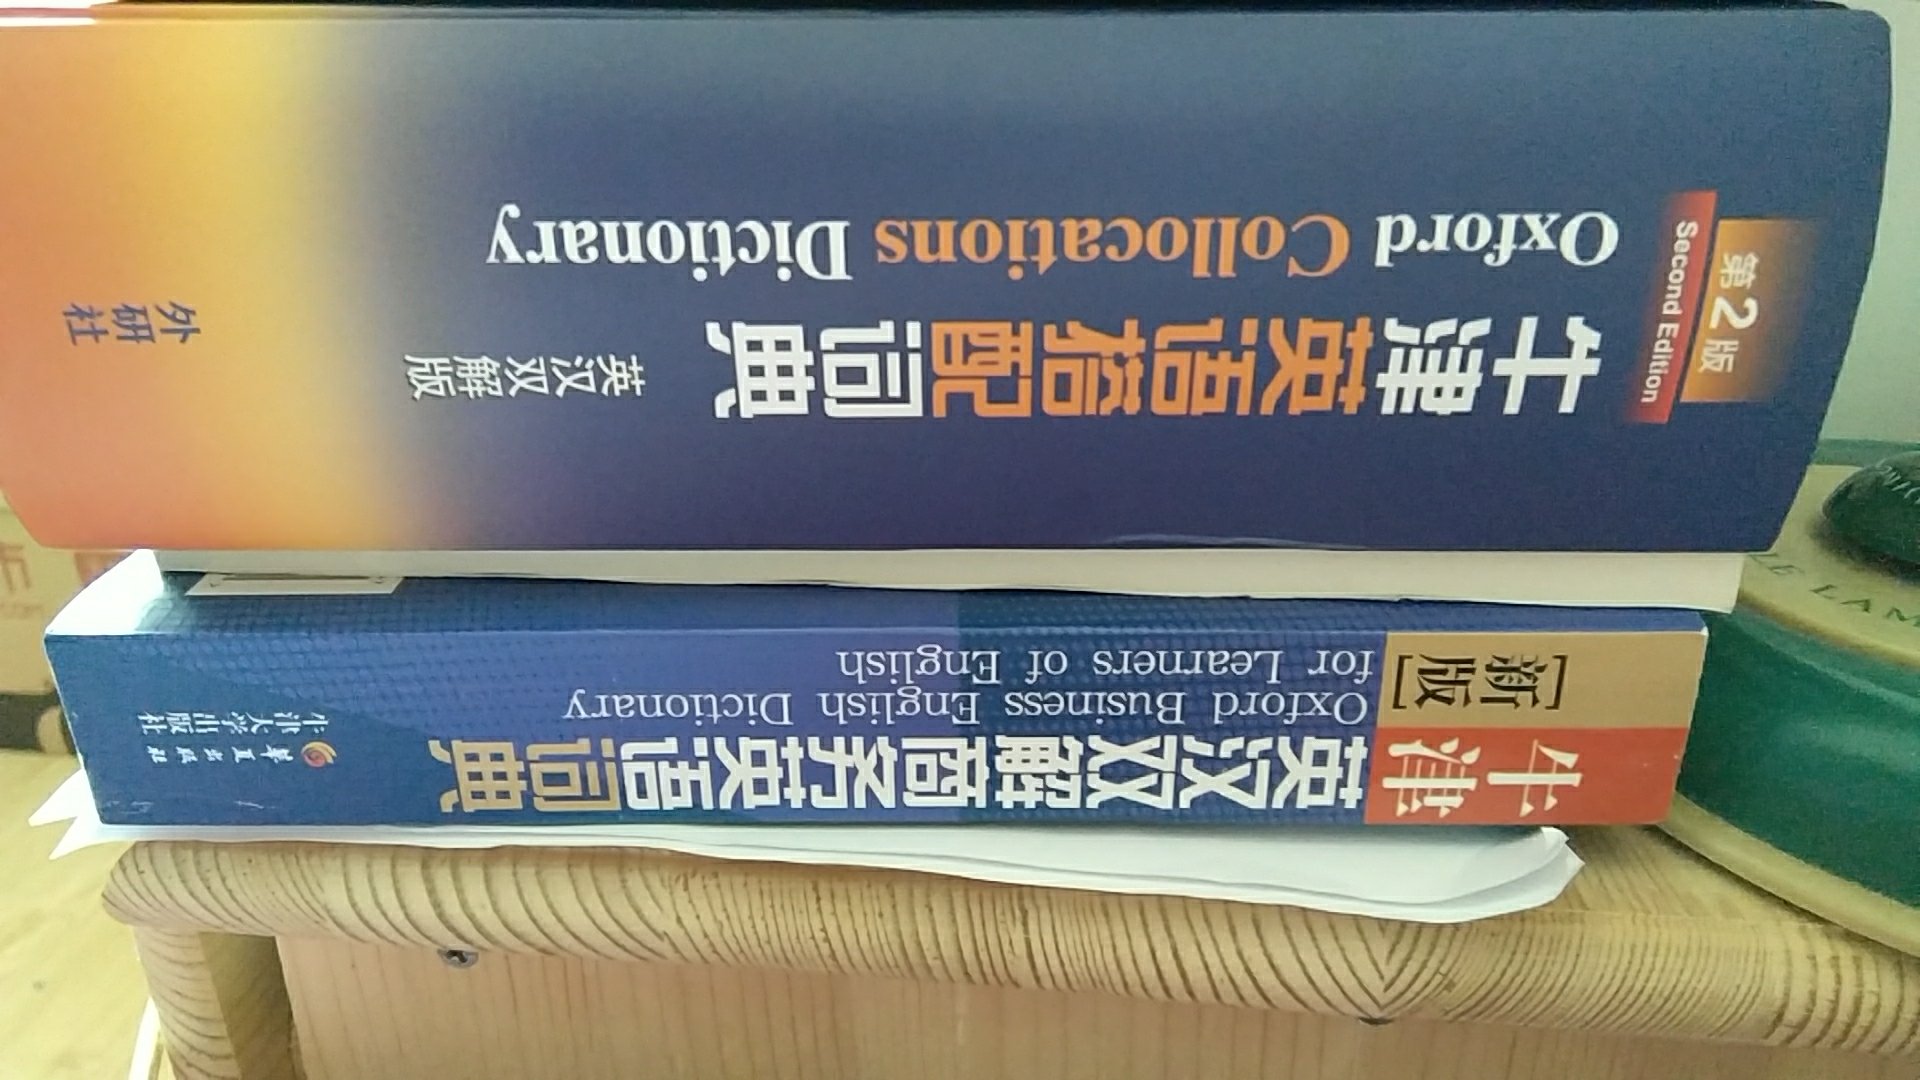 一个塑料袋闯天下。几本牛津双解词典竟然三家出版社分羹。